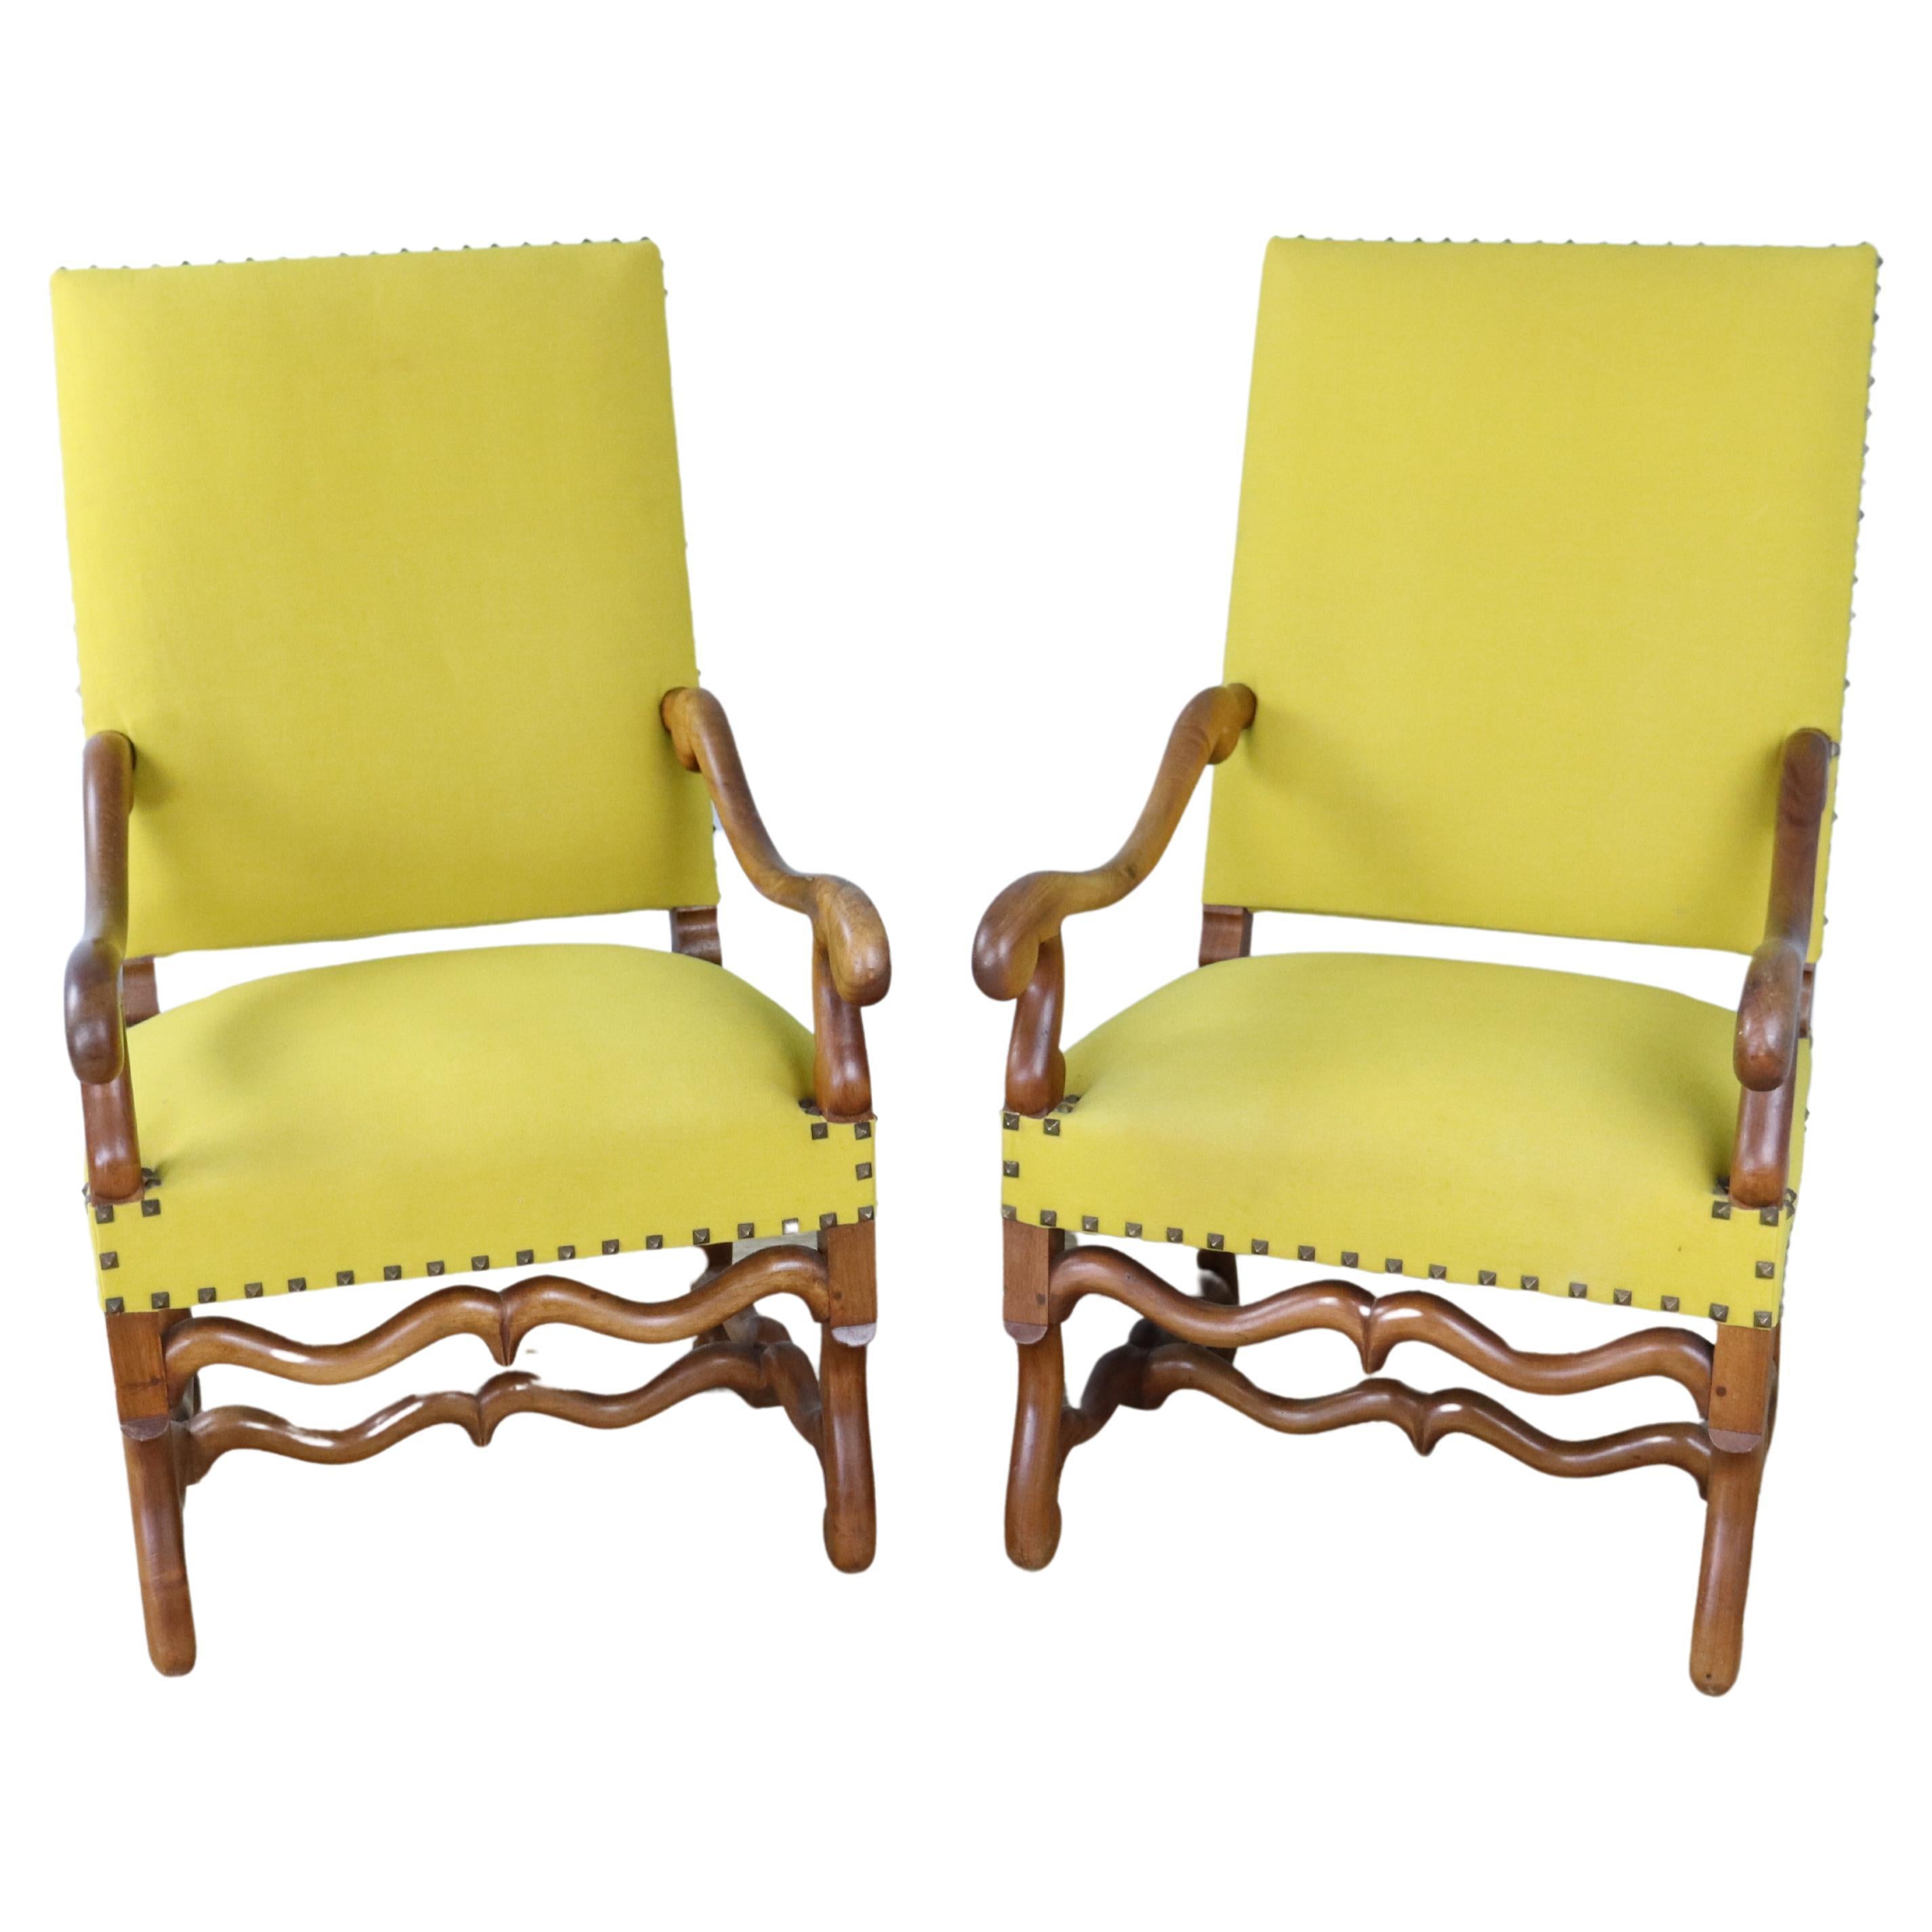 Paar französische Sessel aus Nussbaumholz, neu, gelbe Polsterung